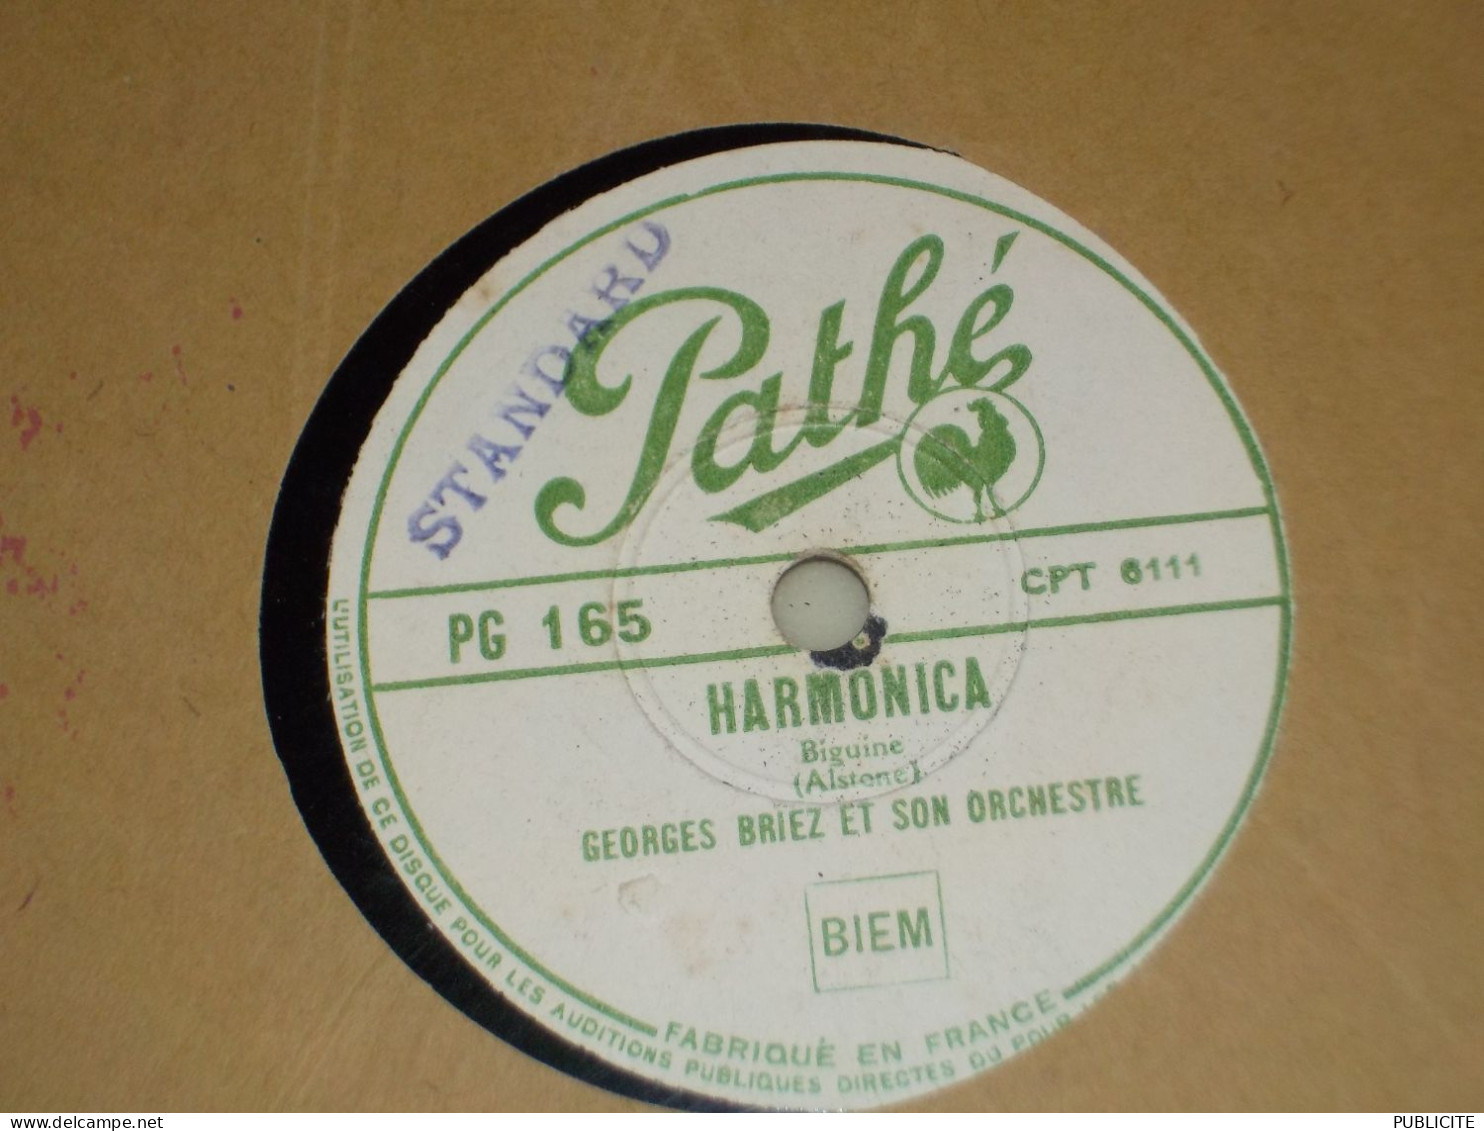 DISQUE 78 TOURS BIGUINE ET SLOW FOX  GEORGES BRIEZ 1946 - 78 Rpm - Gramophone Records